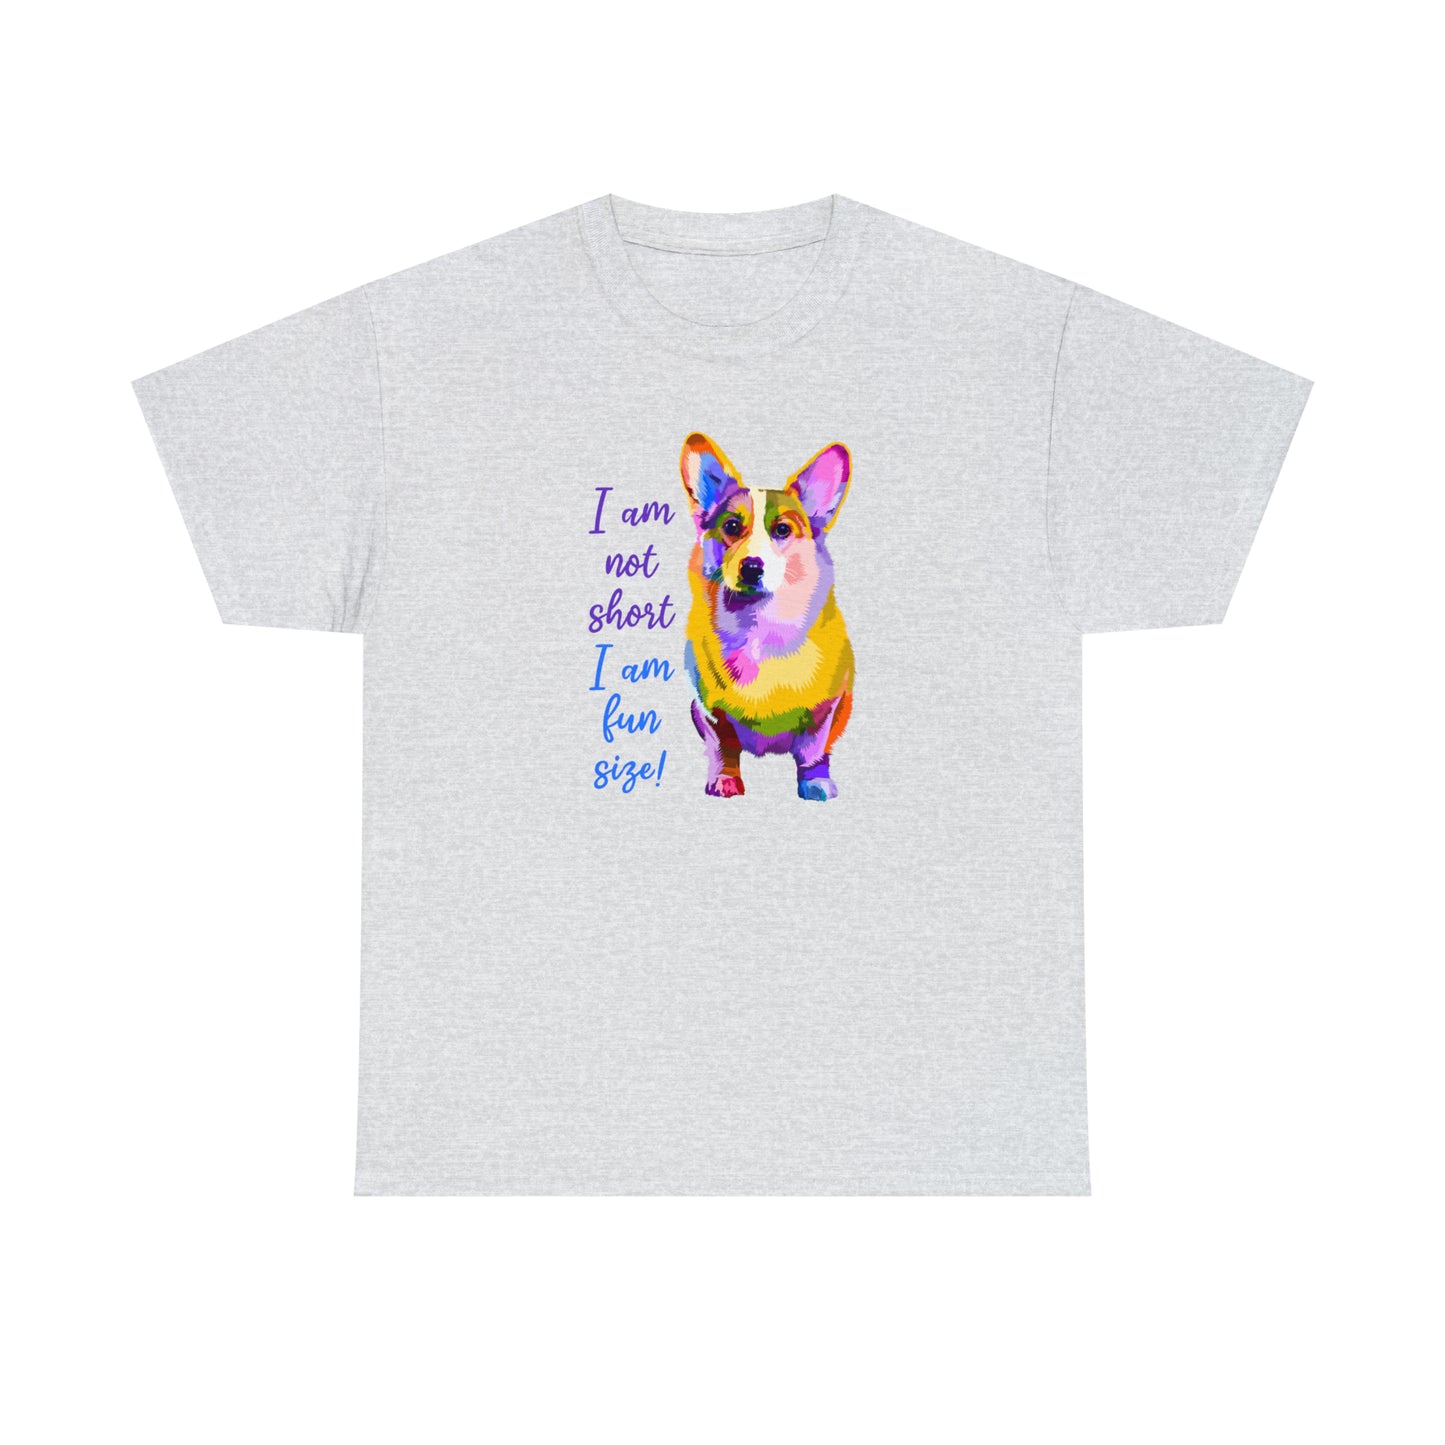 Corgi T-Shirt For Not Short TShirt For Fun Size T Shirt For Favorite Dog Breed Shirt For Dog Lover Gift